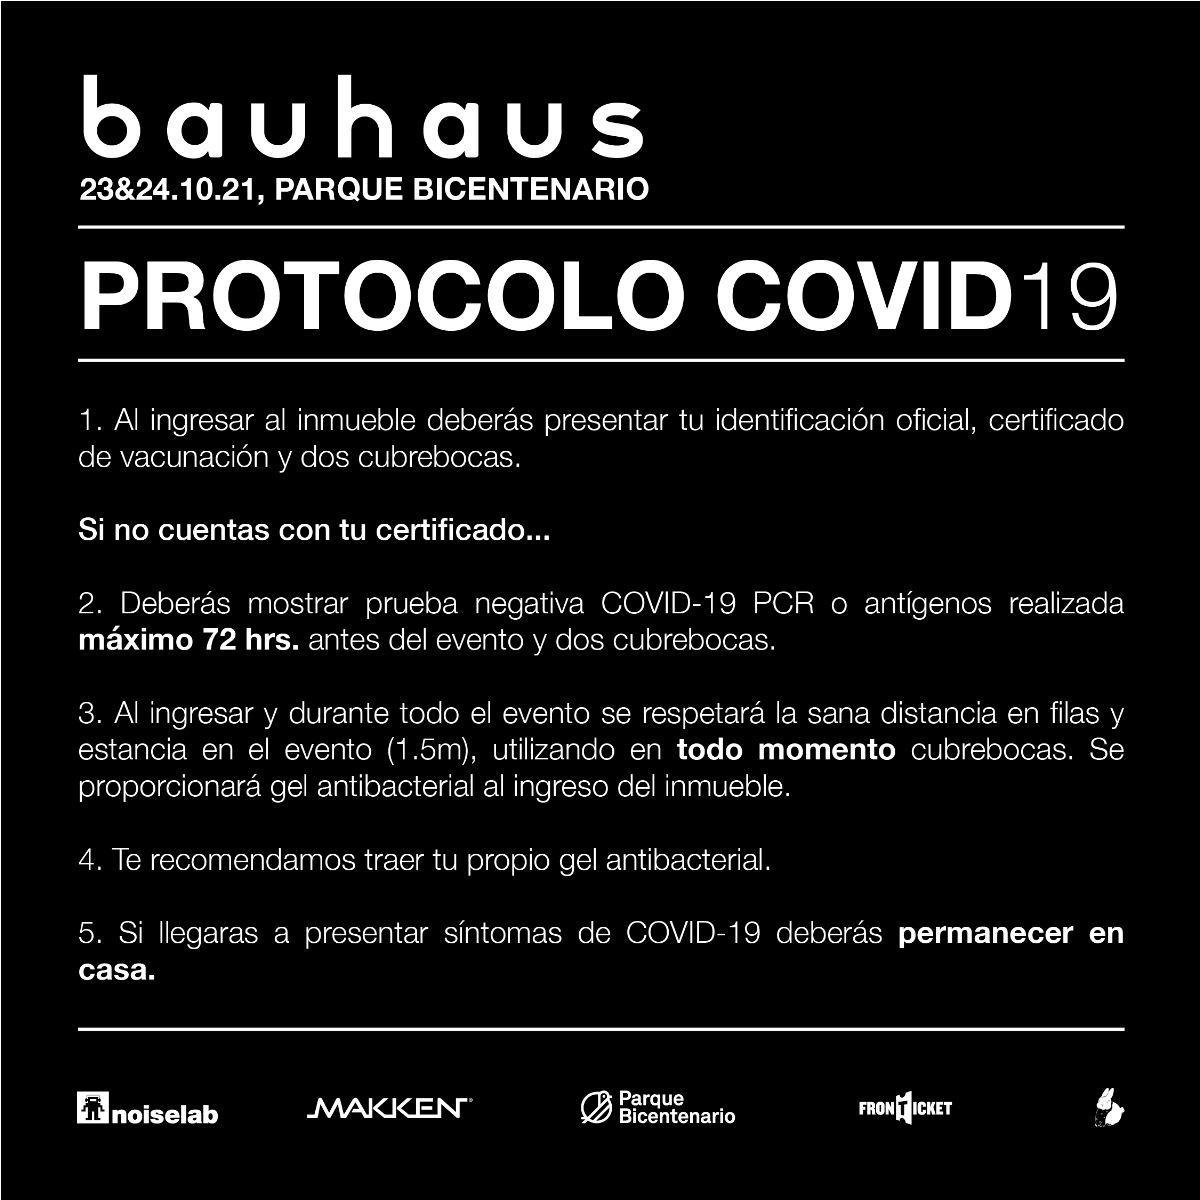 Bauhaus_Protocolo